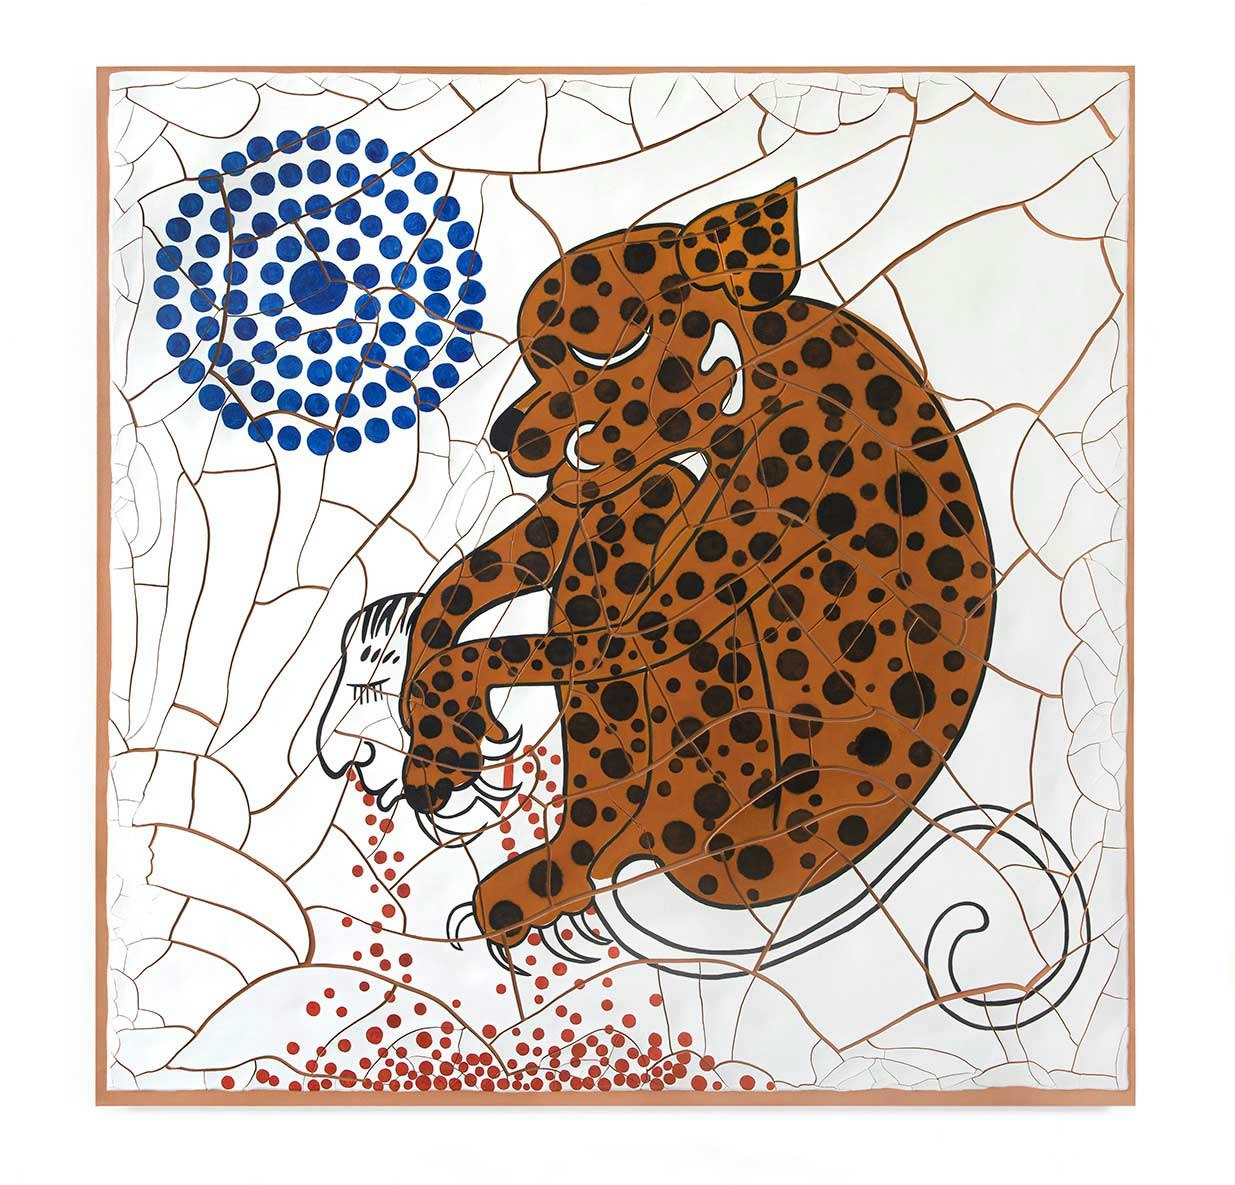 Adriana Varejão, <em>Jaguar</em>, 2020. Oil and plaster on canvas, 70 7/8 x 70 7/8 x 1 5/8 inches. © Adriana Varejão. Photo: Vicente de Mello. Courtesy the artist and Gagosian. 